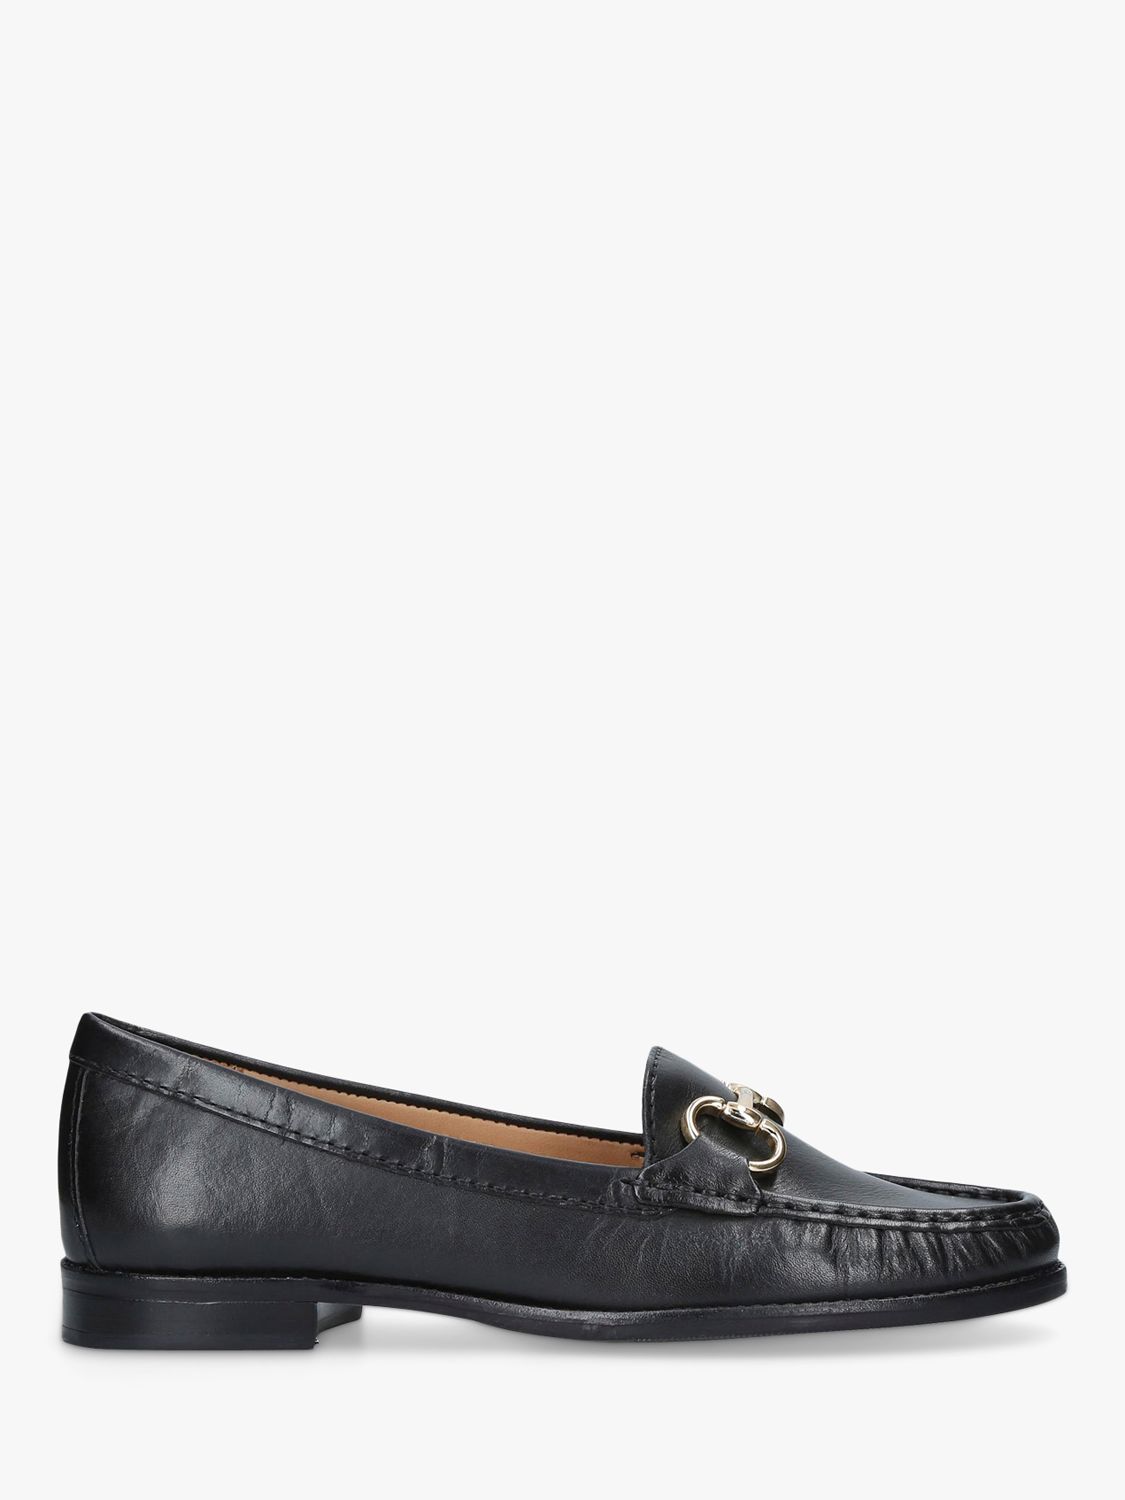 Carvela Comfort Click Loafers, Black, 3